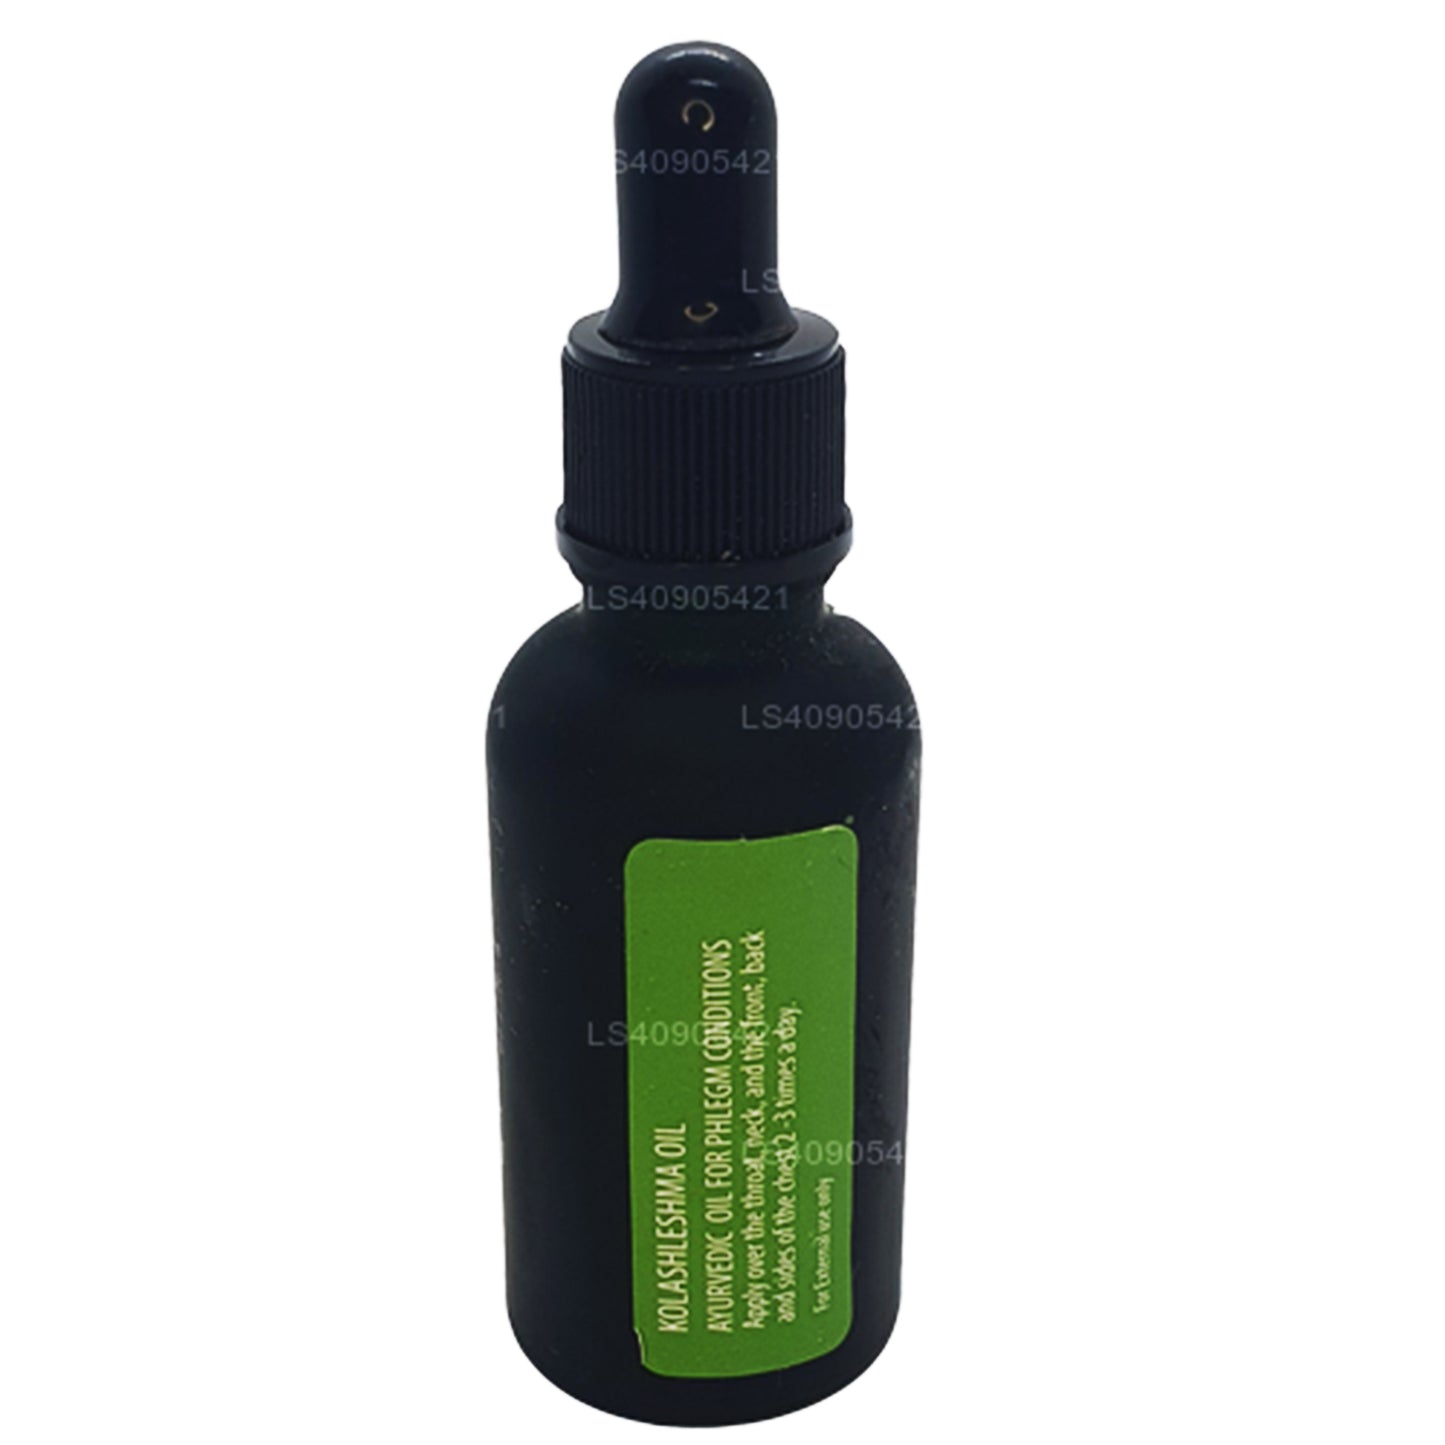 Link Kolasheshma Ätherisches Öl (30 ml)